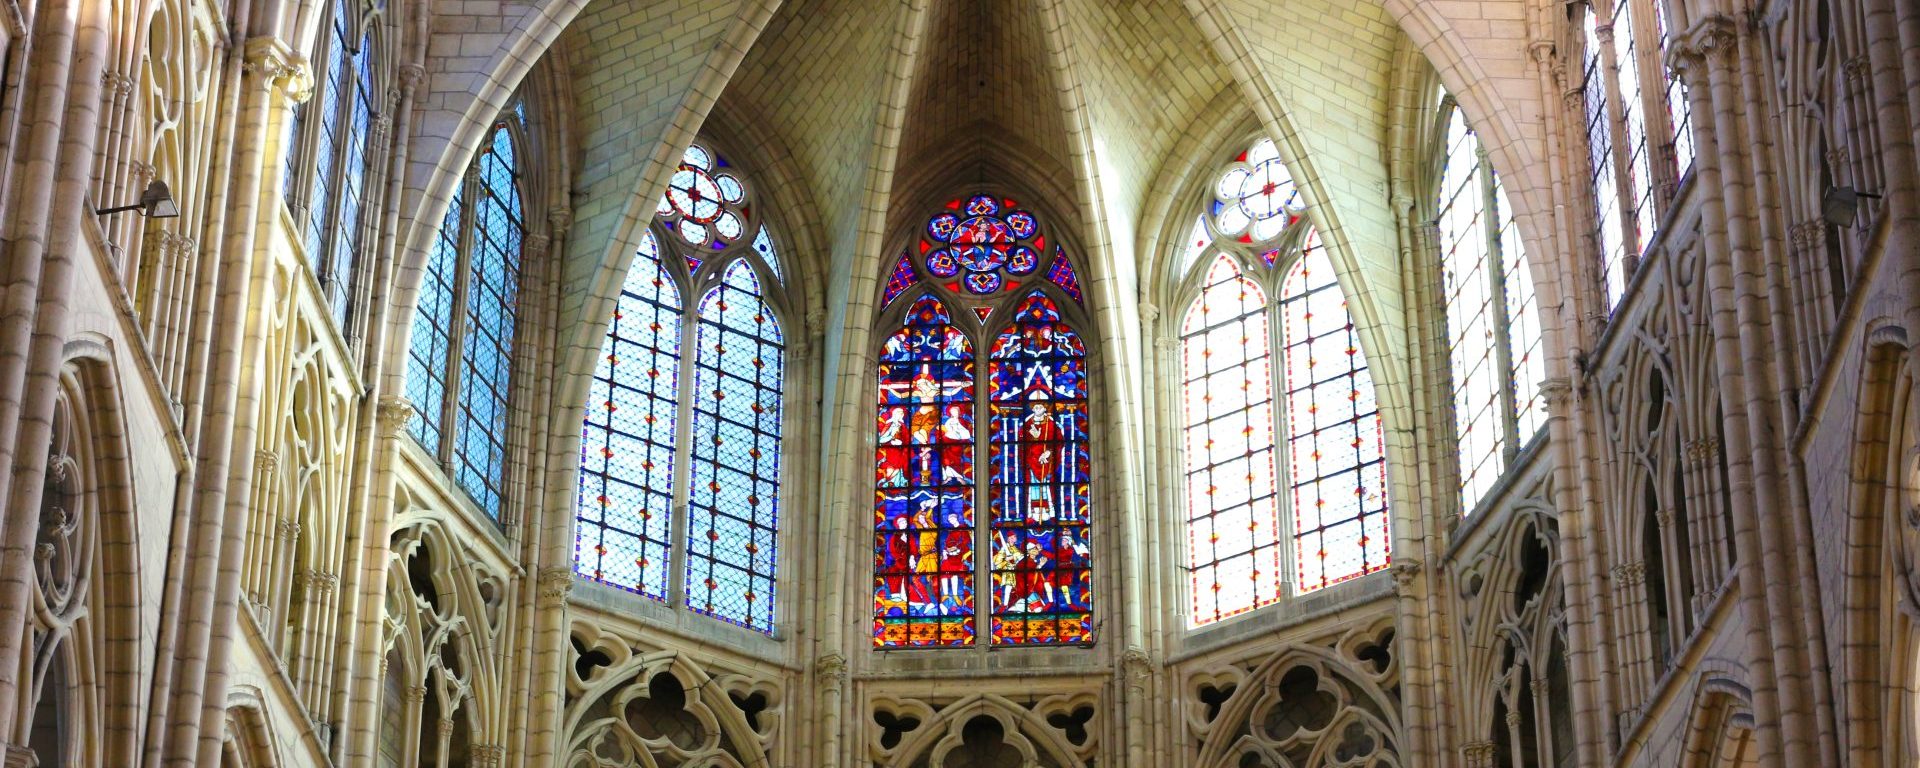 Vitraux de la cathédrale Saint-Etienne de Meaux